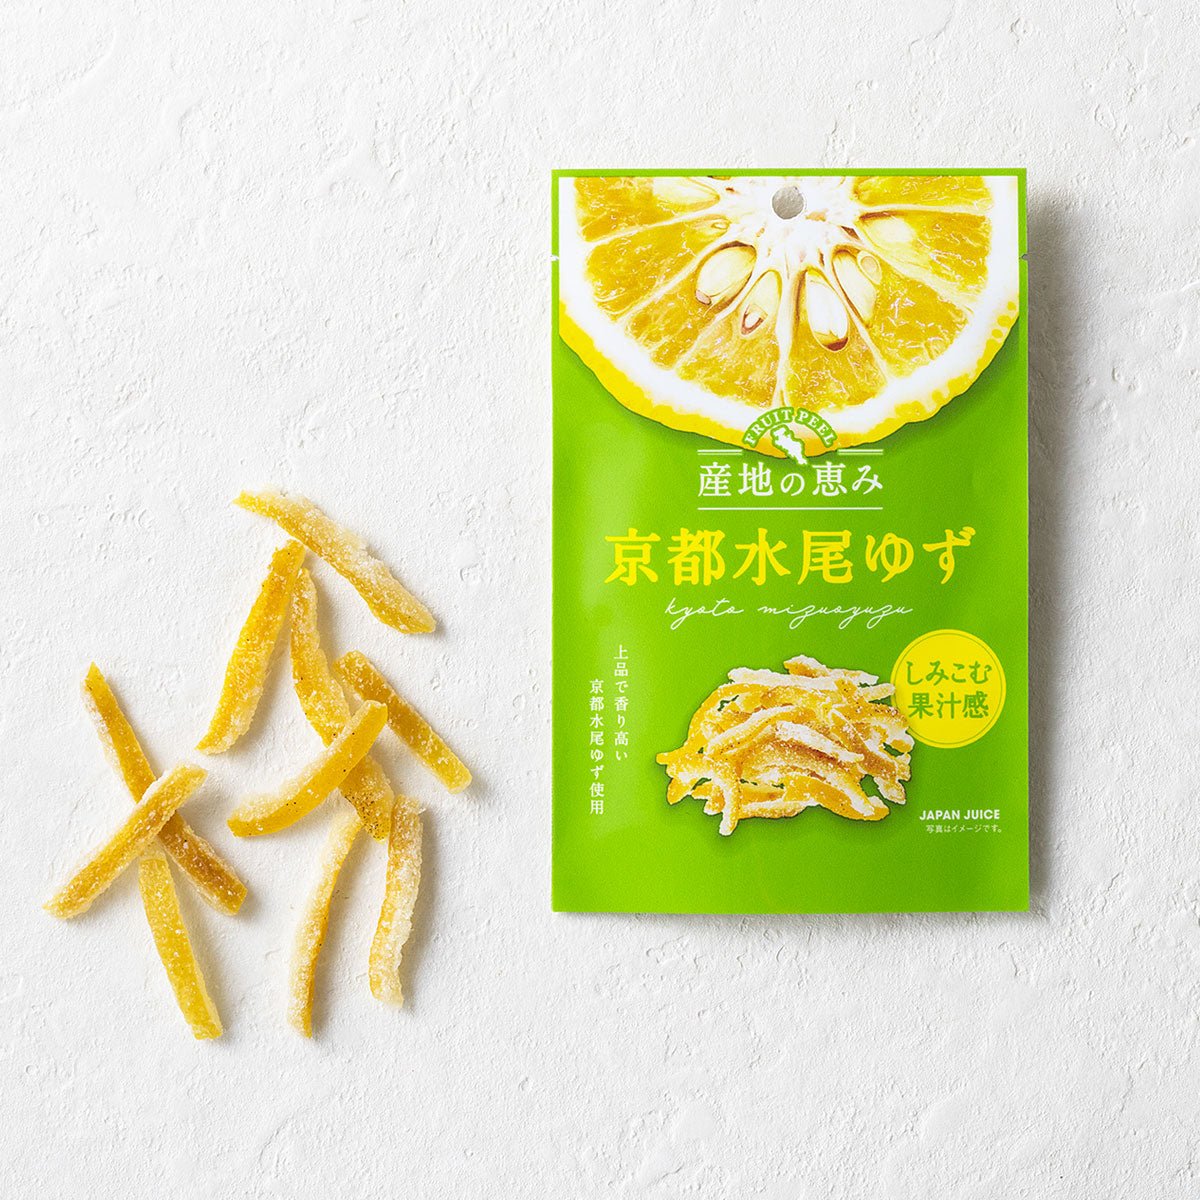 Kyoto Mizuo Yuzu Fruit Peel JAPANJUICE - Tokyo Fresh Direct